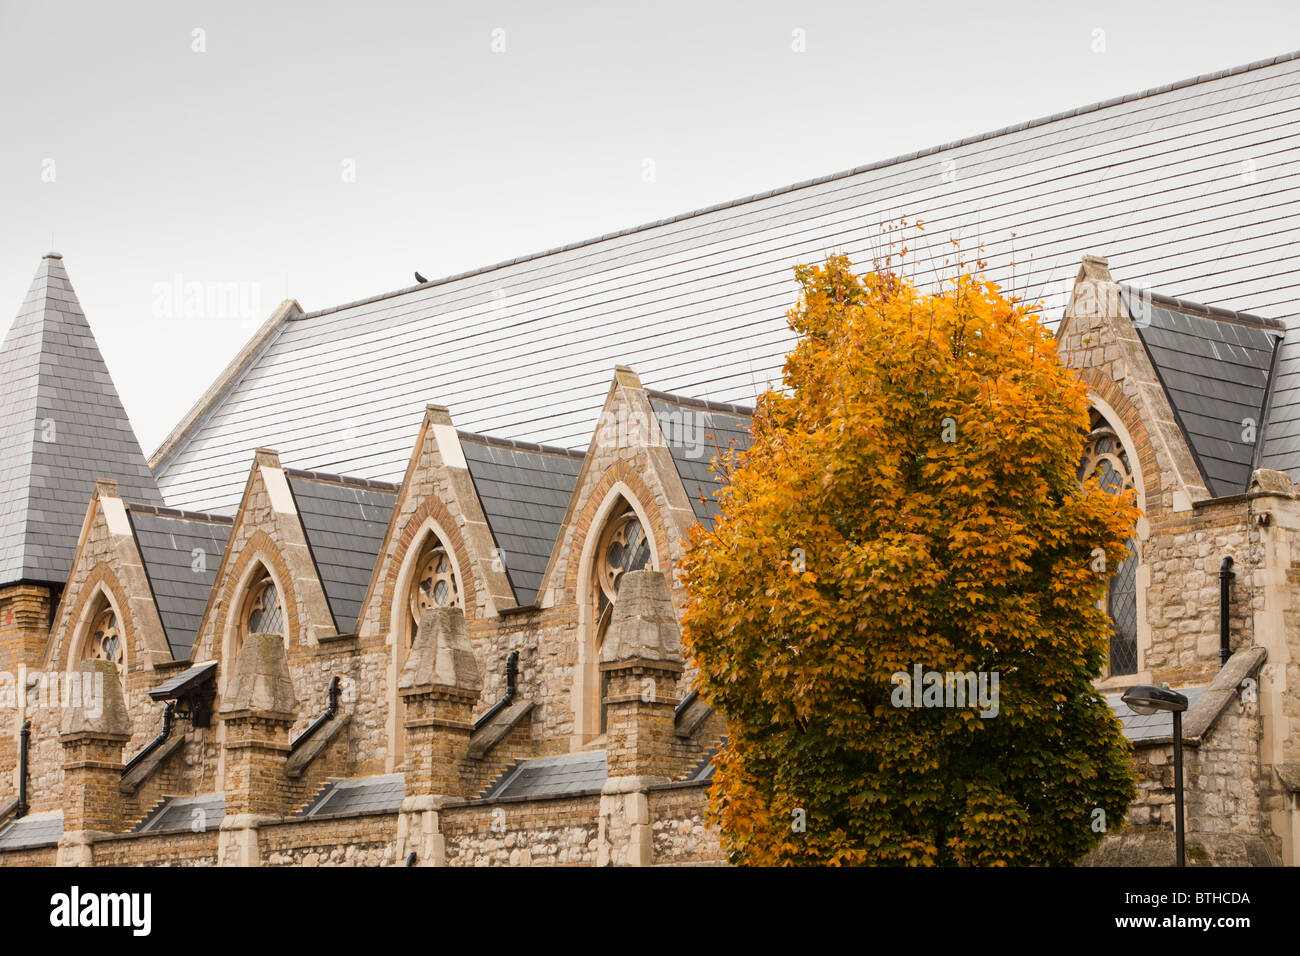 Solarziegel auf St Silas Kirche in Pentonville, London, UK. Das Solardach produziert Aprox. 47 % des Energiebedarfs von Gebäuden Stockfoto